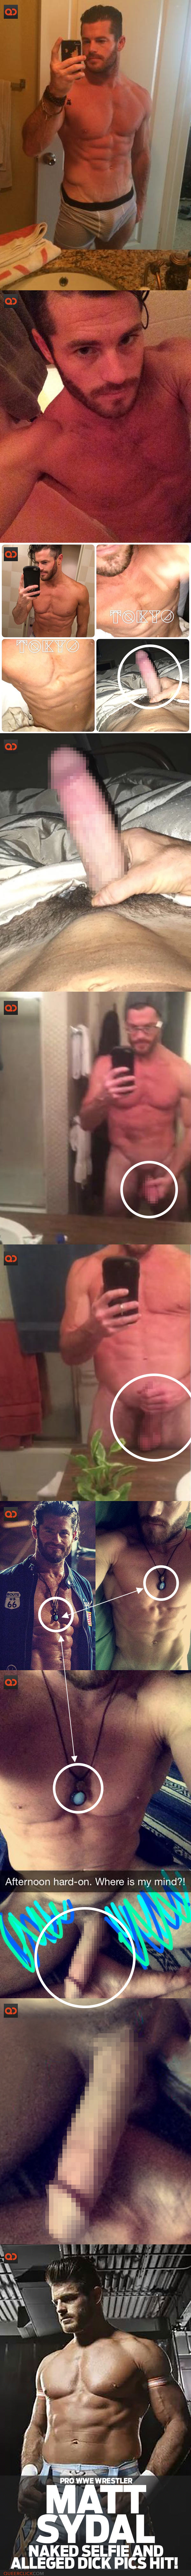 Matt Sydal, Pro WWE Wrestler, Naked Selfie And Alleged Dick Pics Hit!